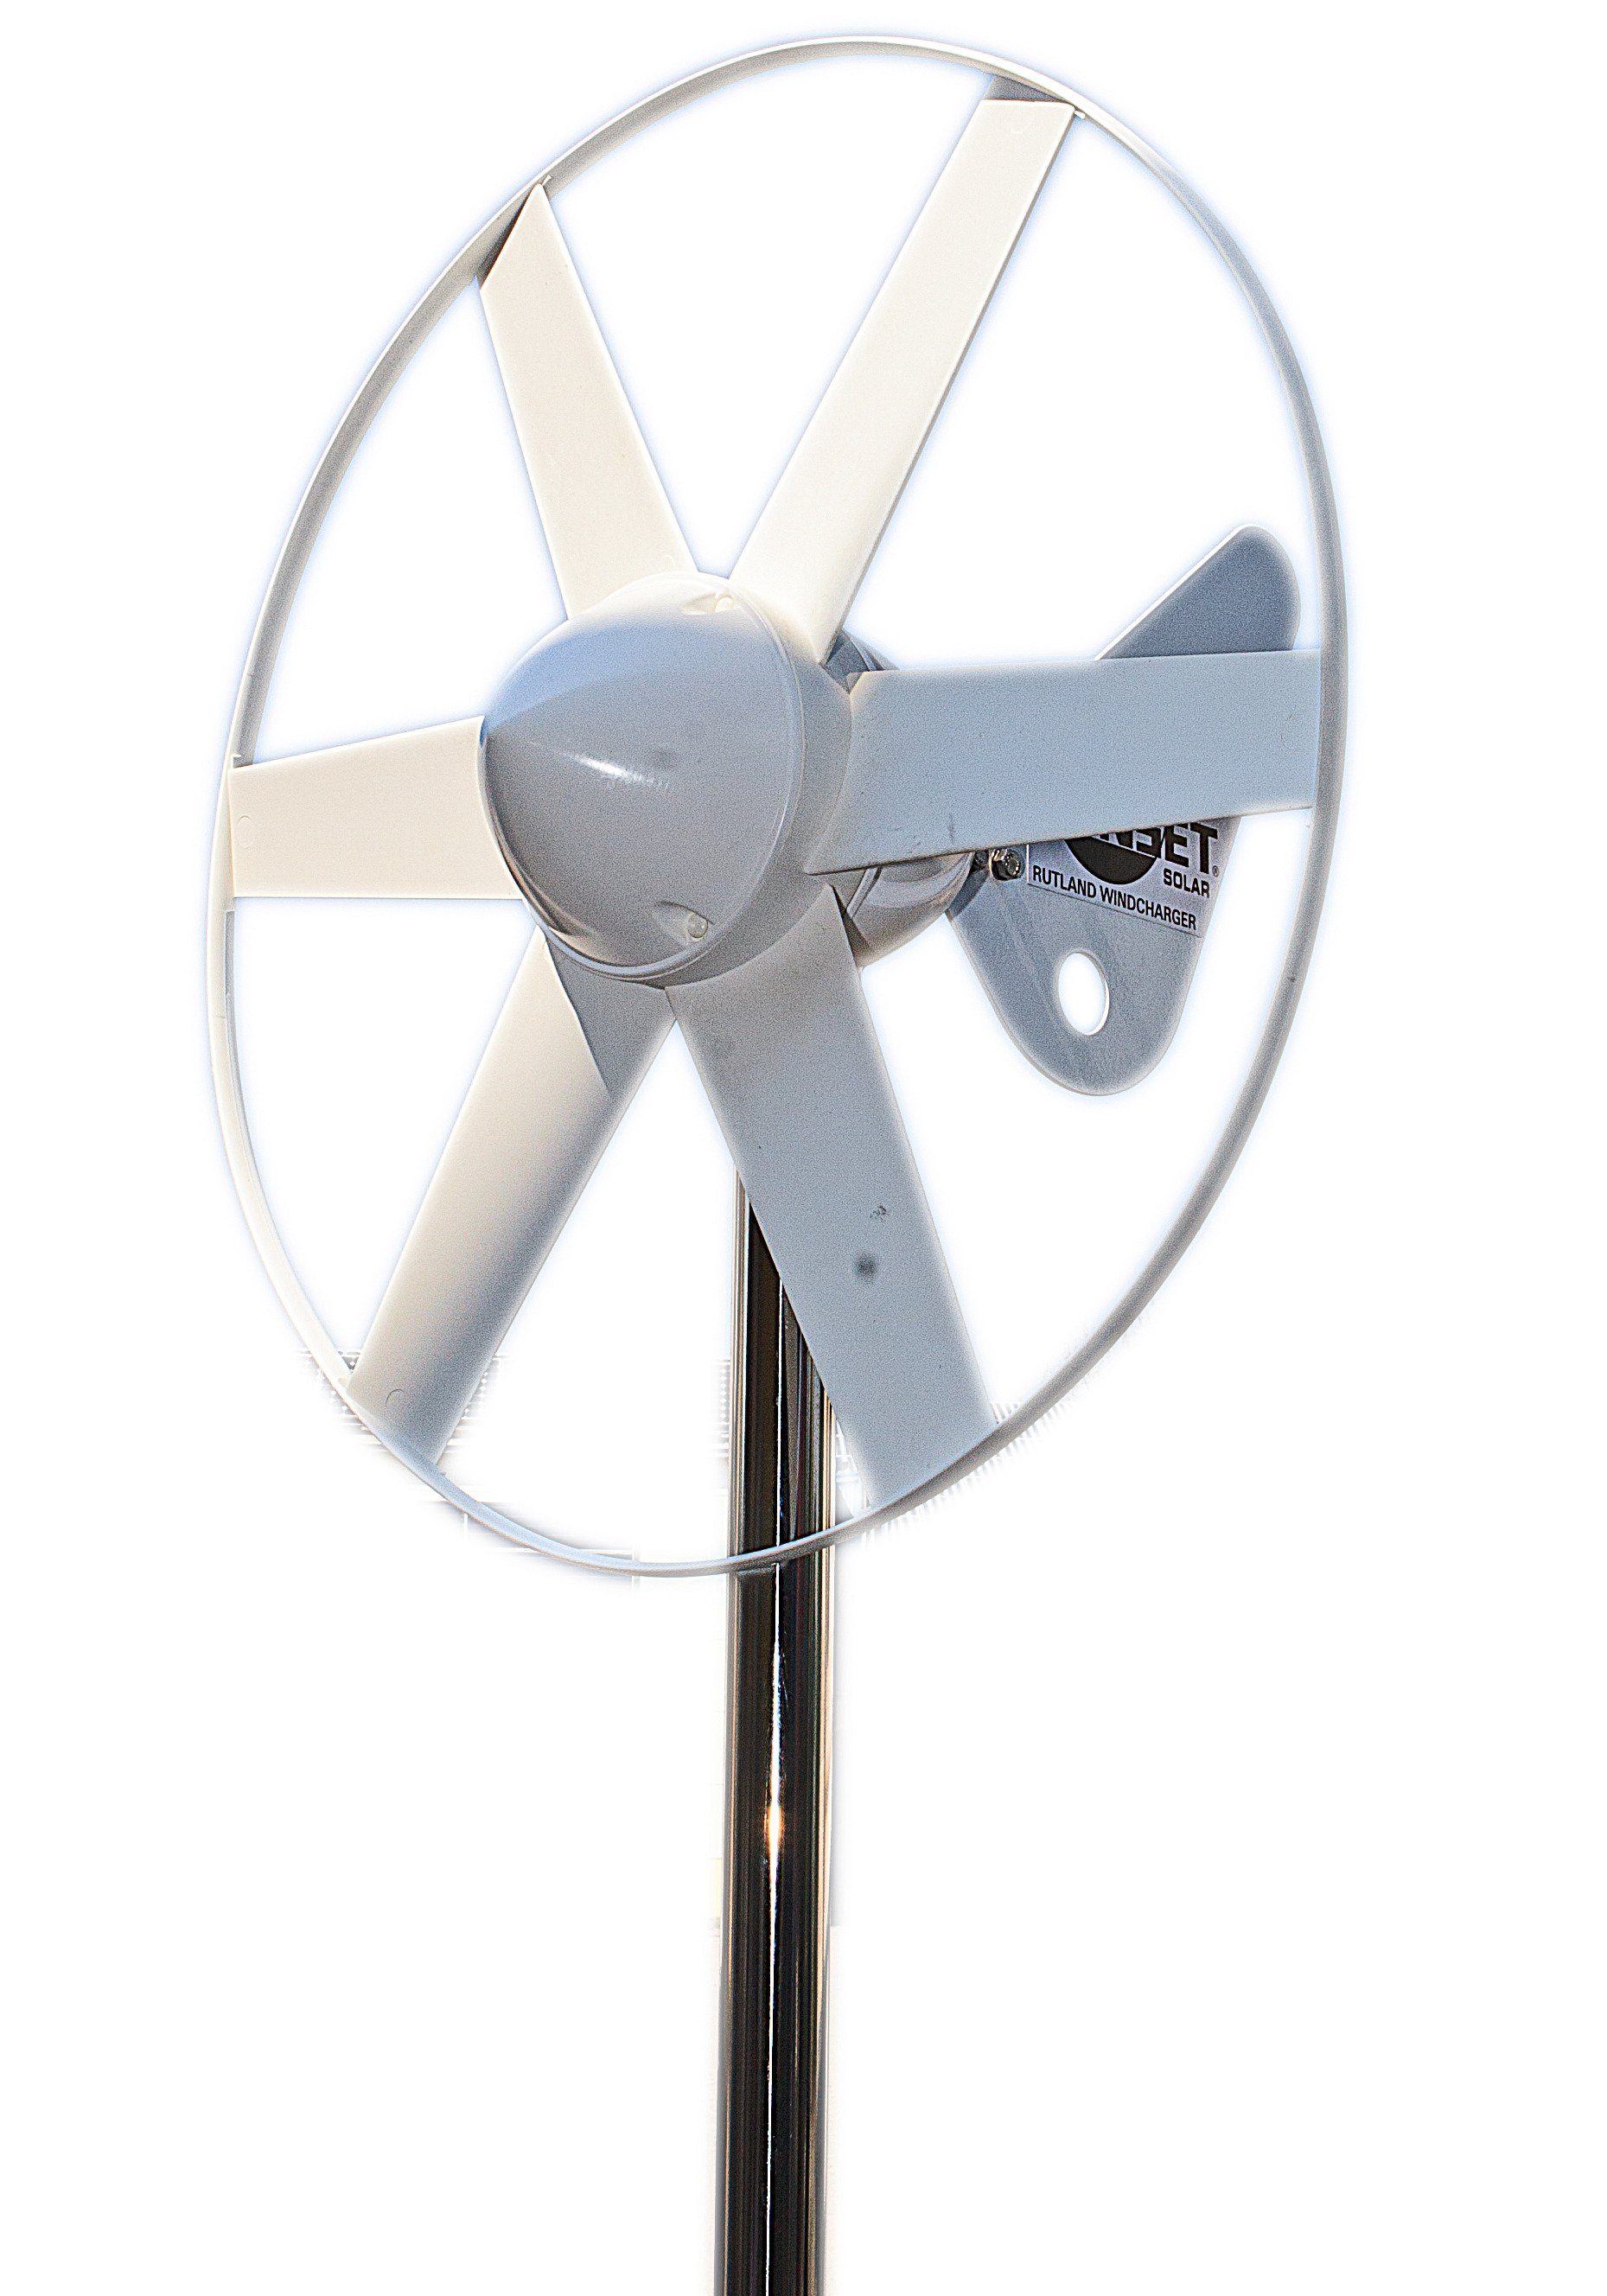 Sunset Windgenerator WG 504, 12 12 Ergänzung 80 Solarenergie W, V, als V, zur